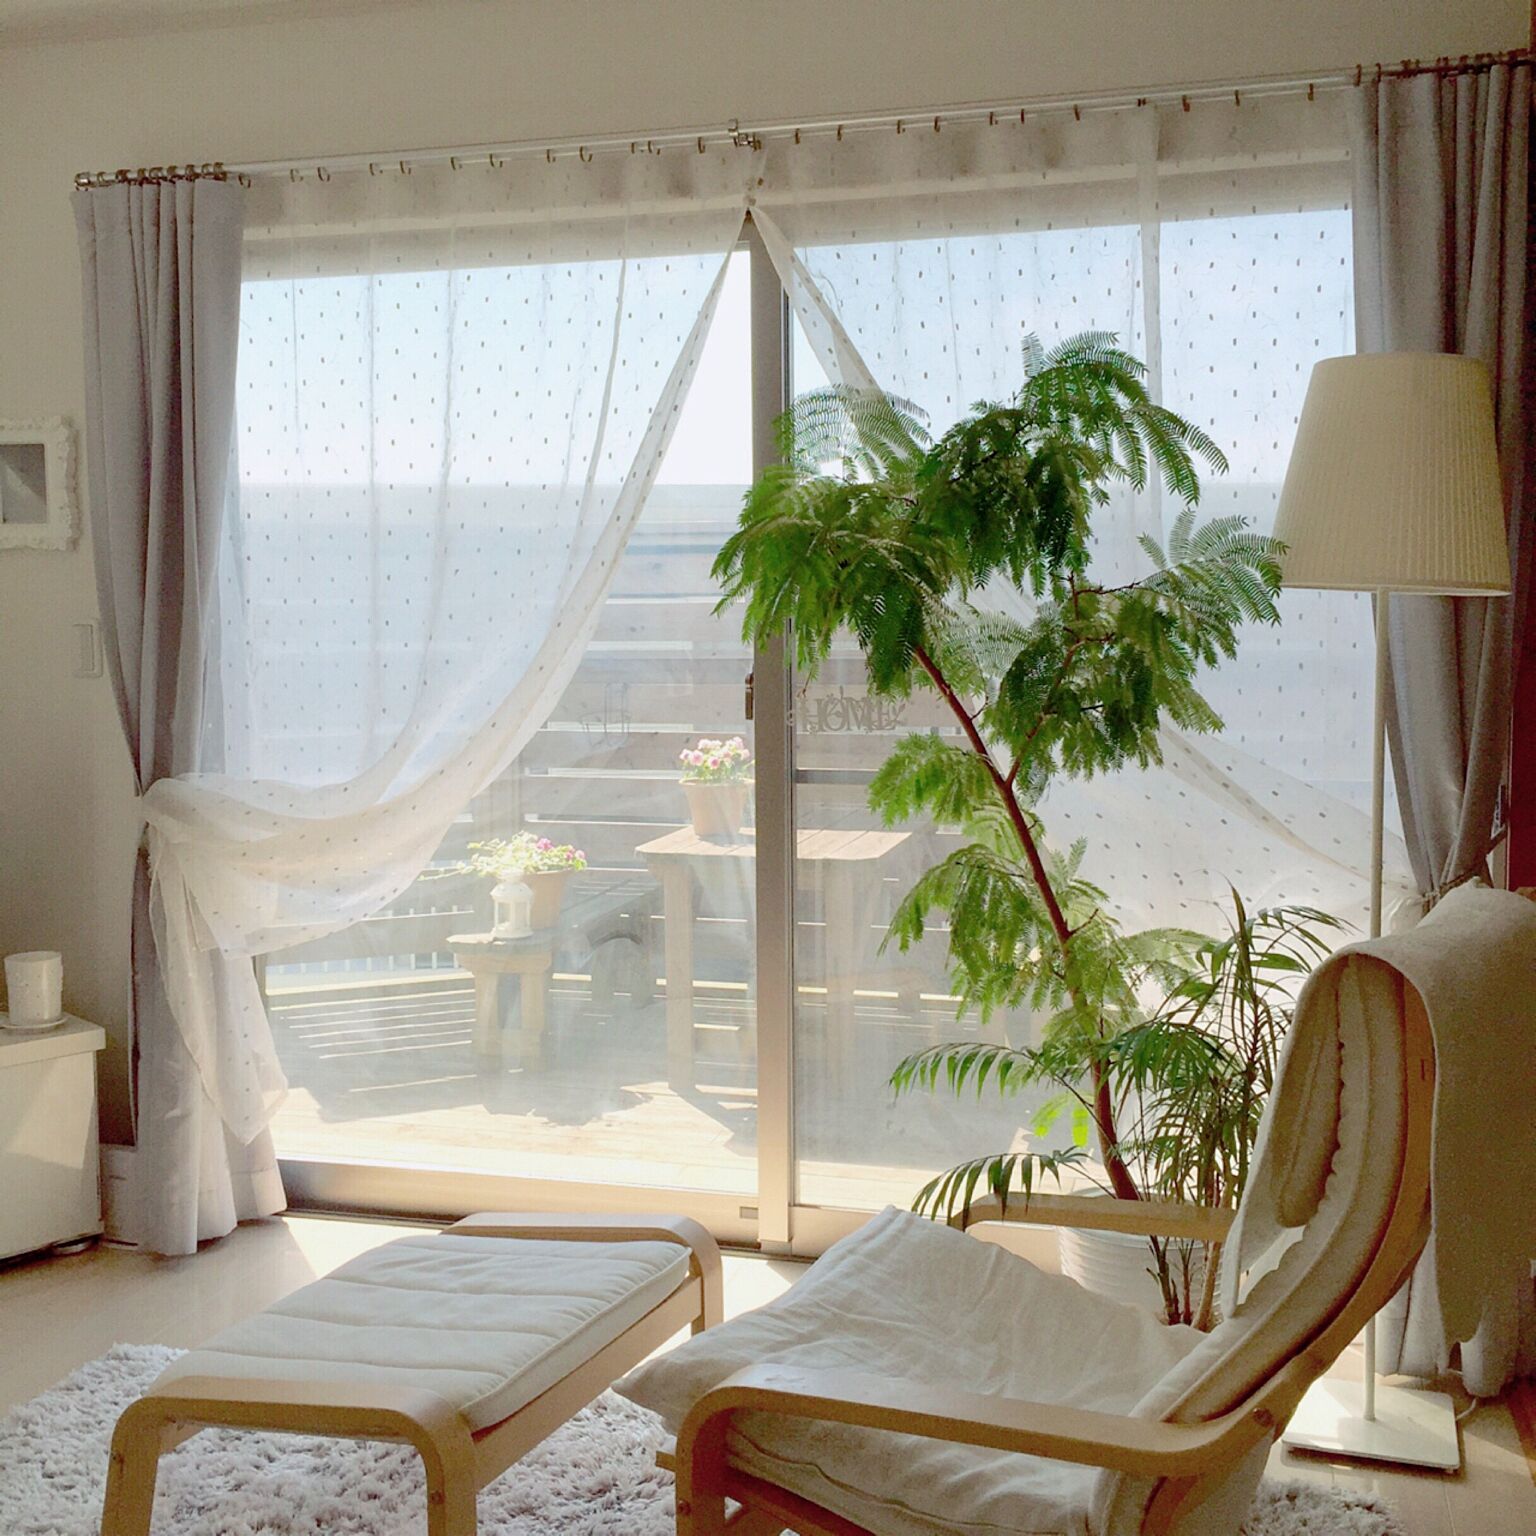 ホッと一息できる 心に余裕が持てる部屋作り10のコツ Roomclip Mag 暮らしとインテリアのwebマガジン